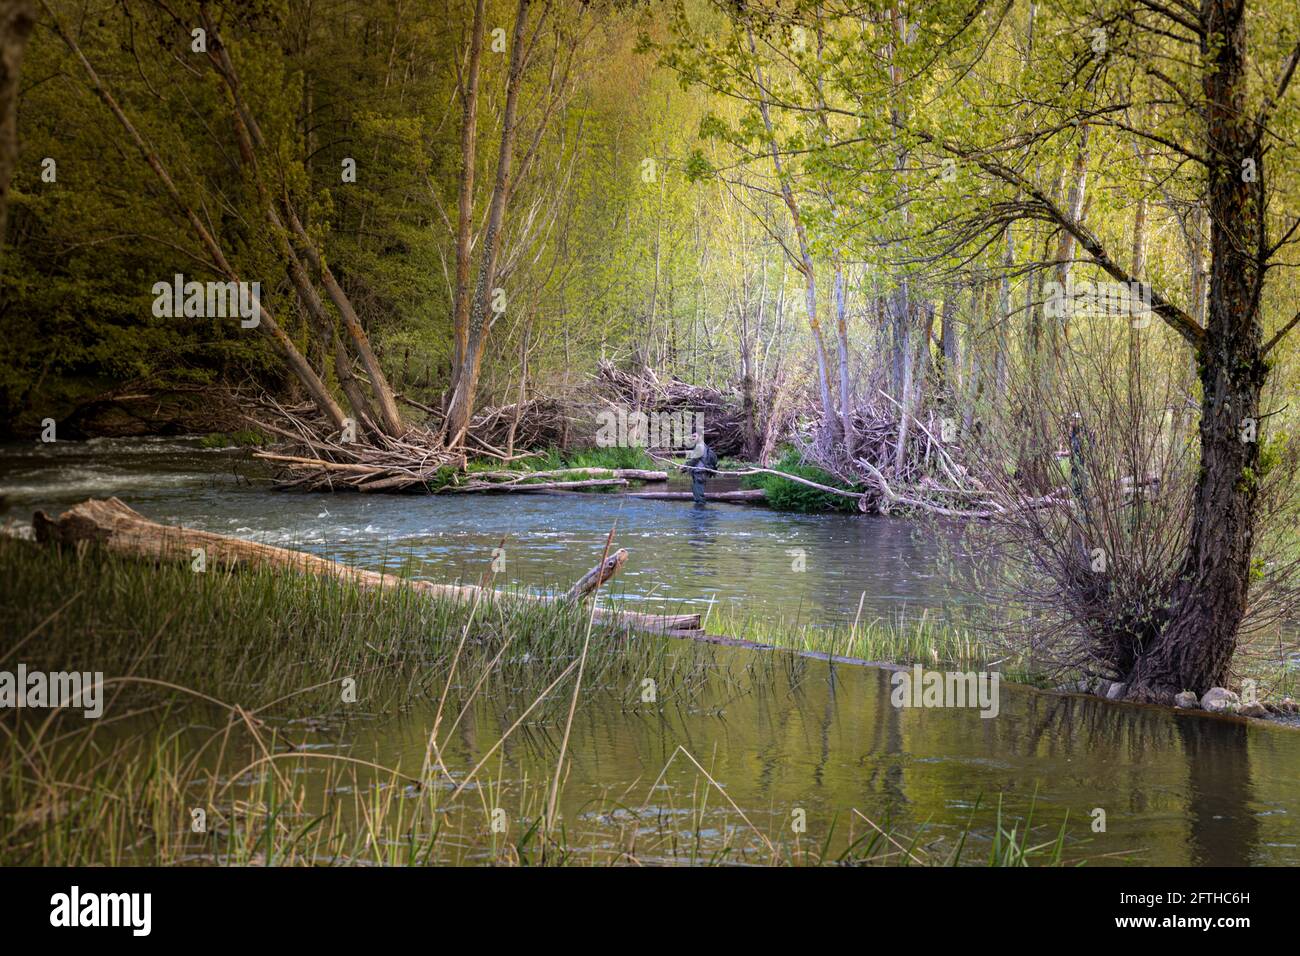 Landschaft eines Baches mit Wasser, wo zwei Angler sind Angeln auf Forellen, die den Fluss mit einem selektiven Fokus bewaten Stockfoto